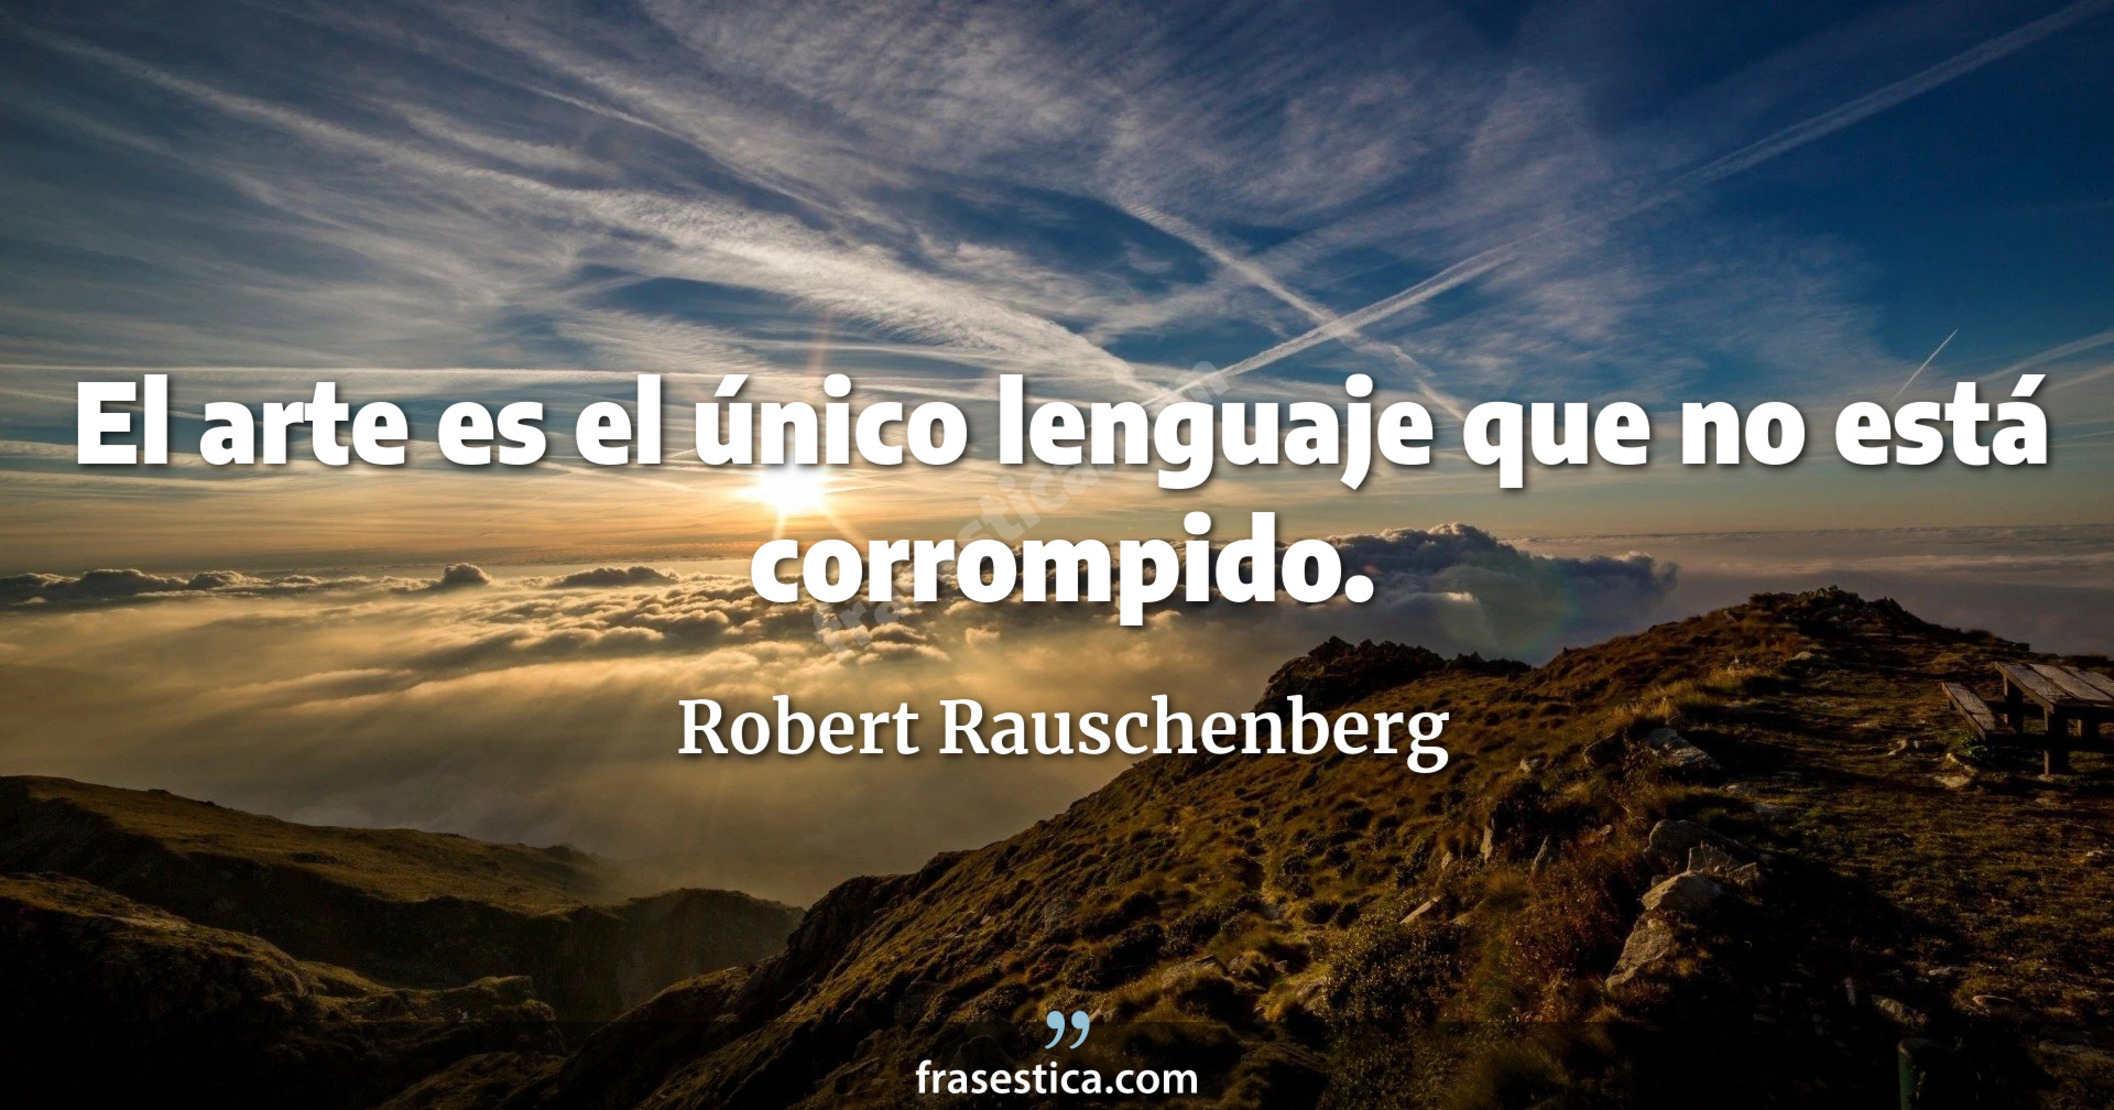 El arte es el único lenguaje que no está corrompido. - Robert Rauschenberg